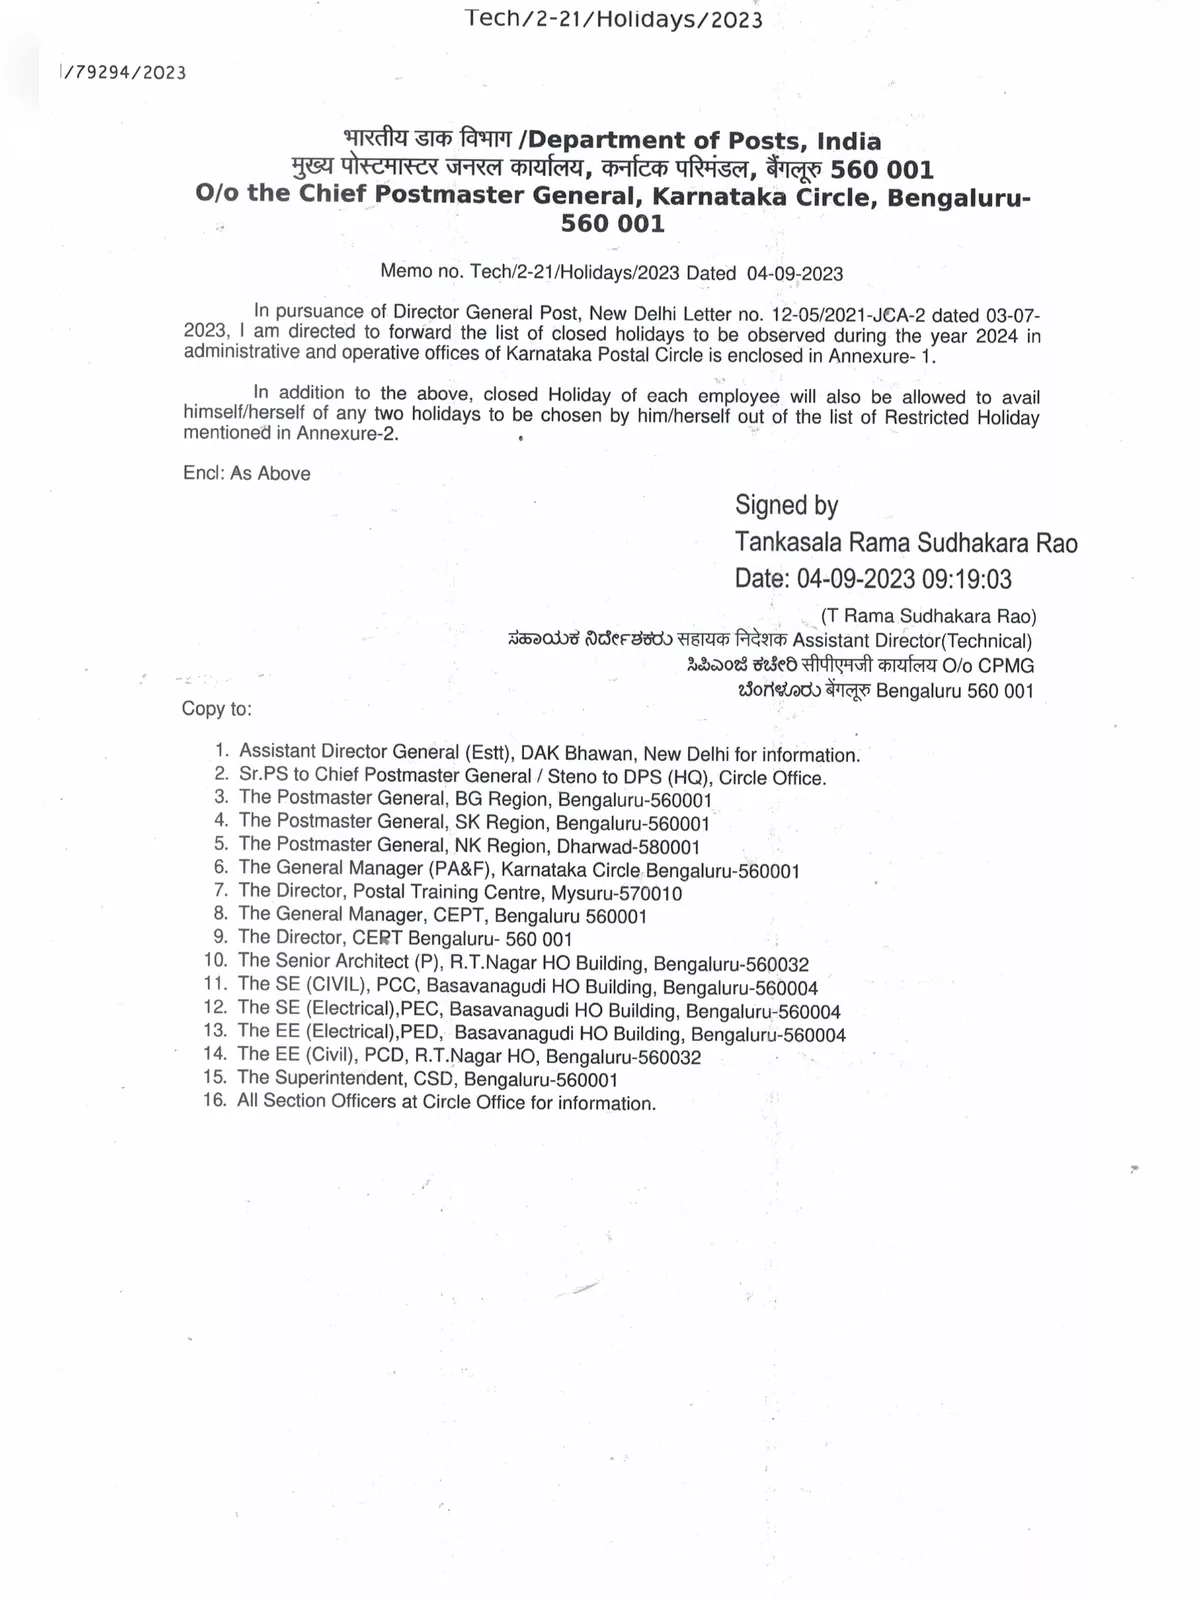 Karnataka State Government Holiday List 2024